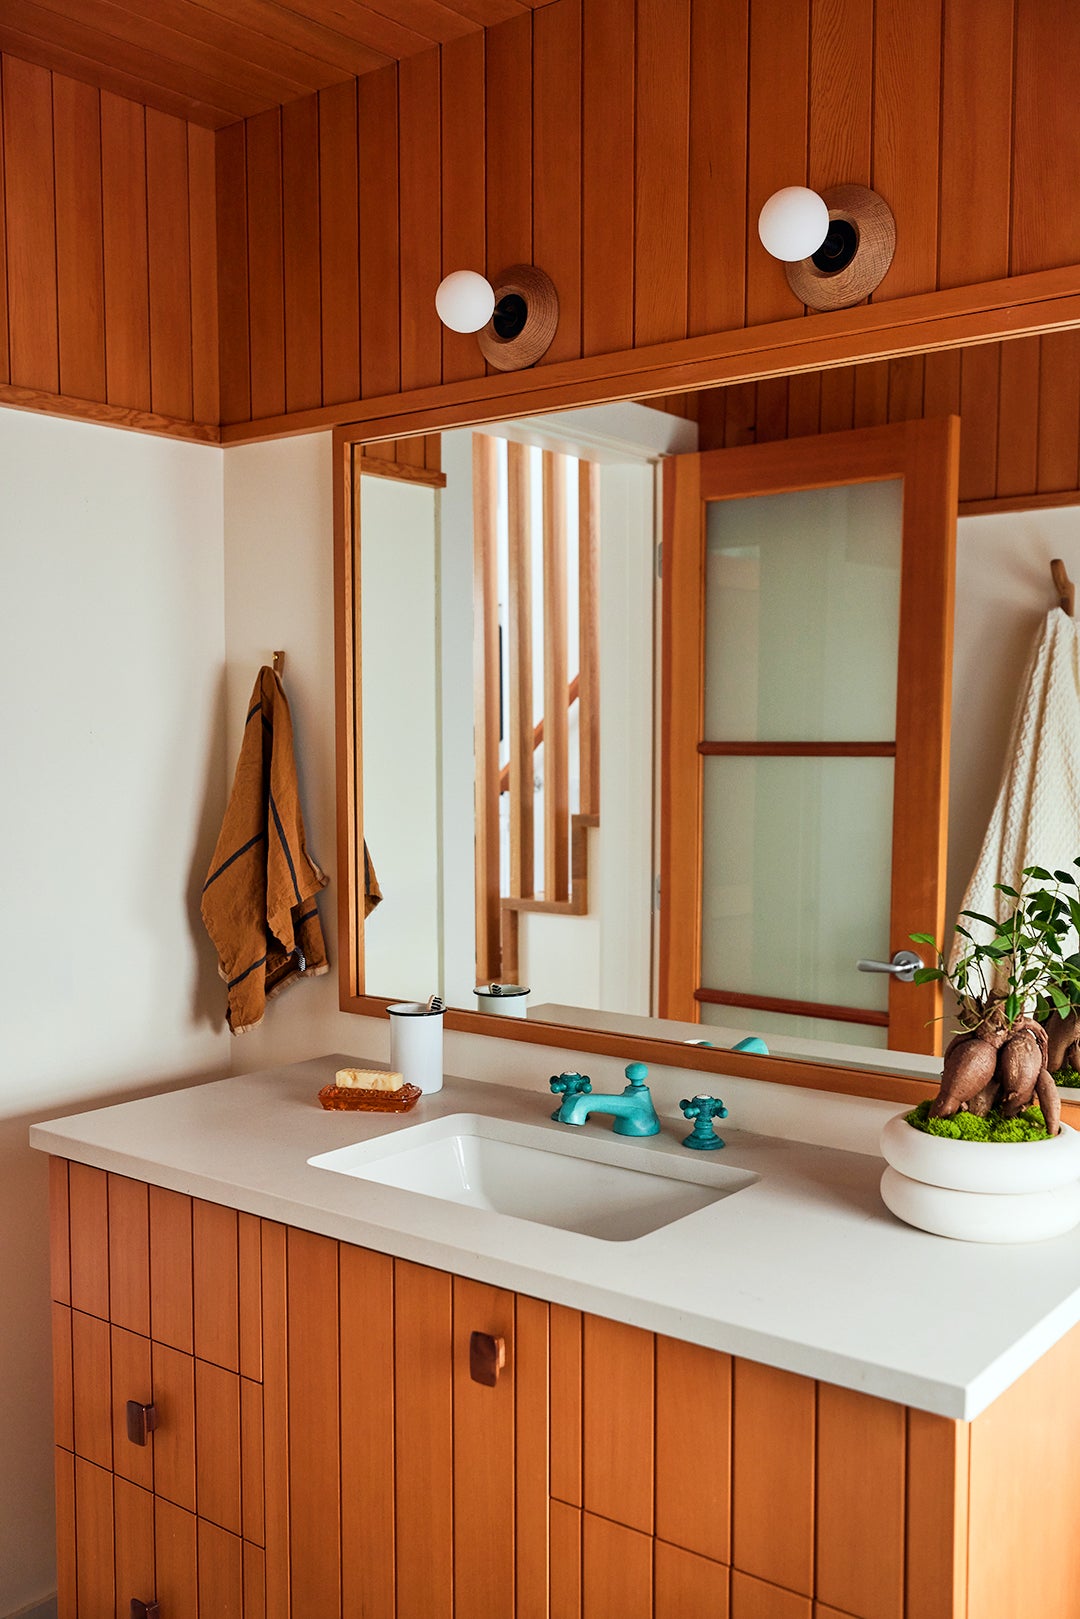 wood paneled bathroom